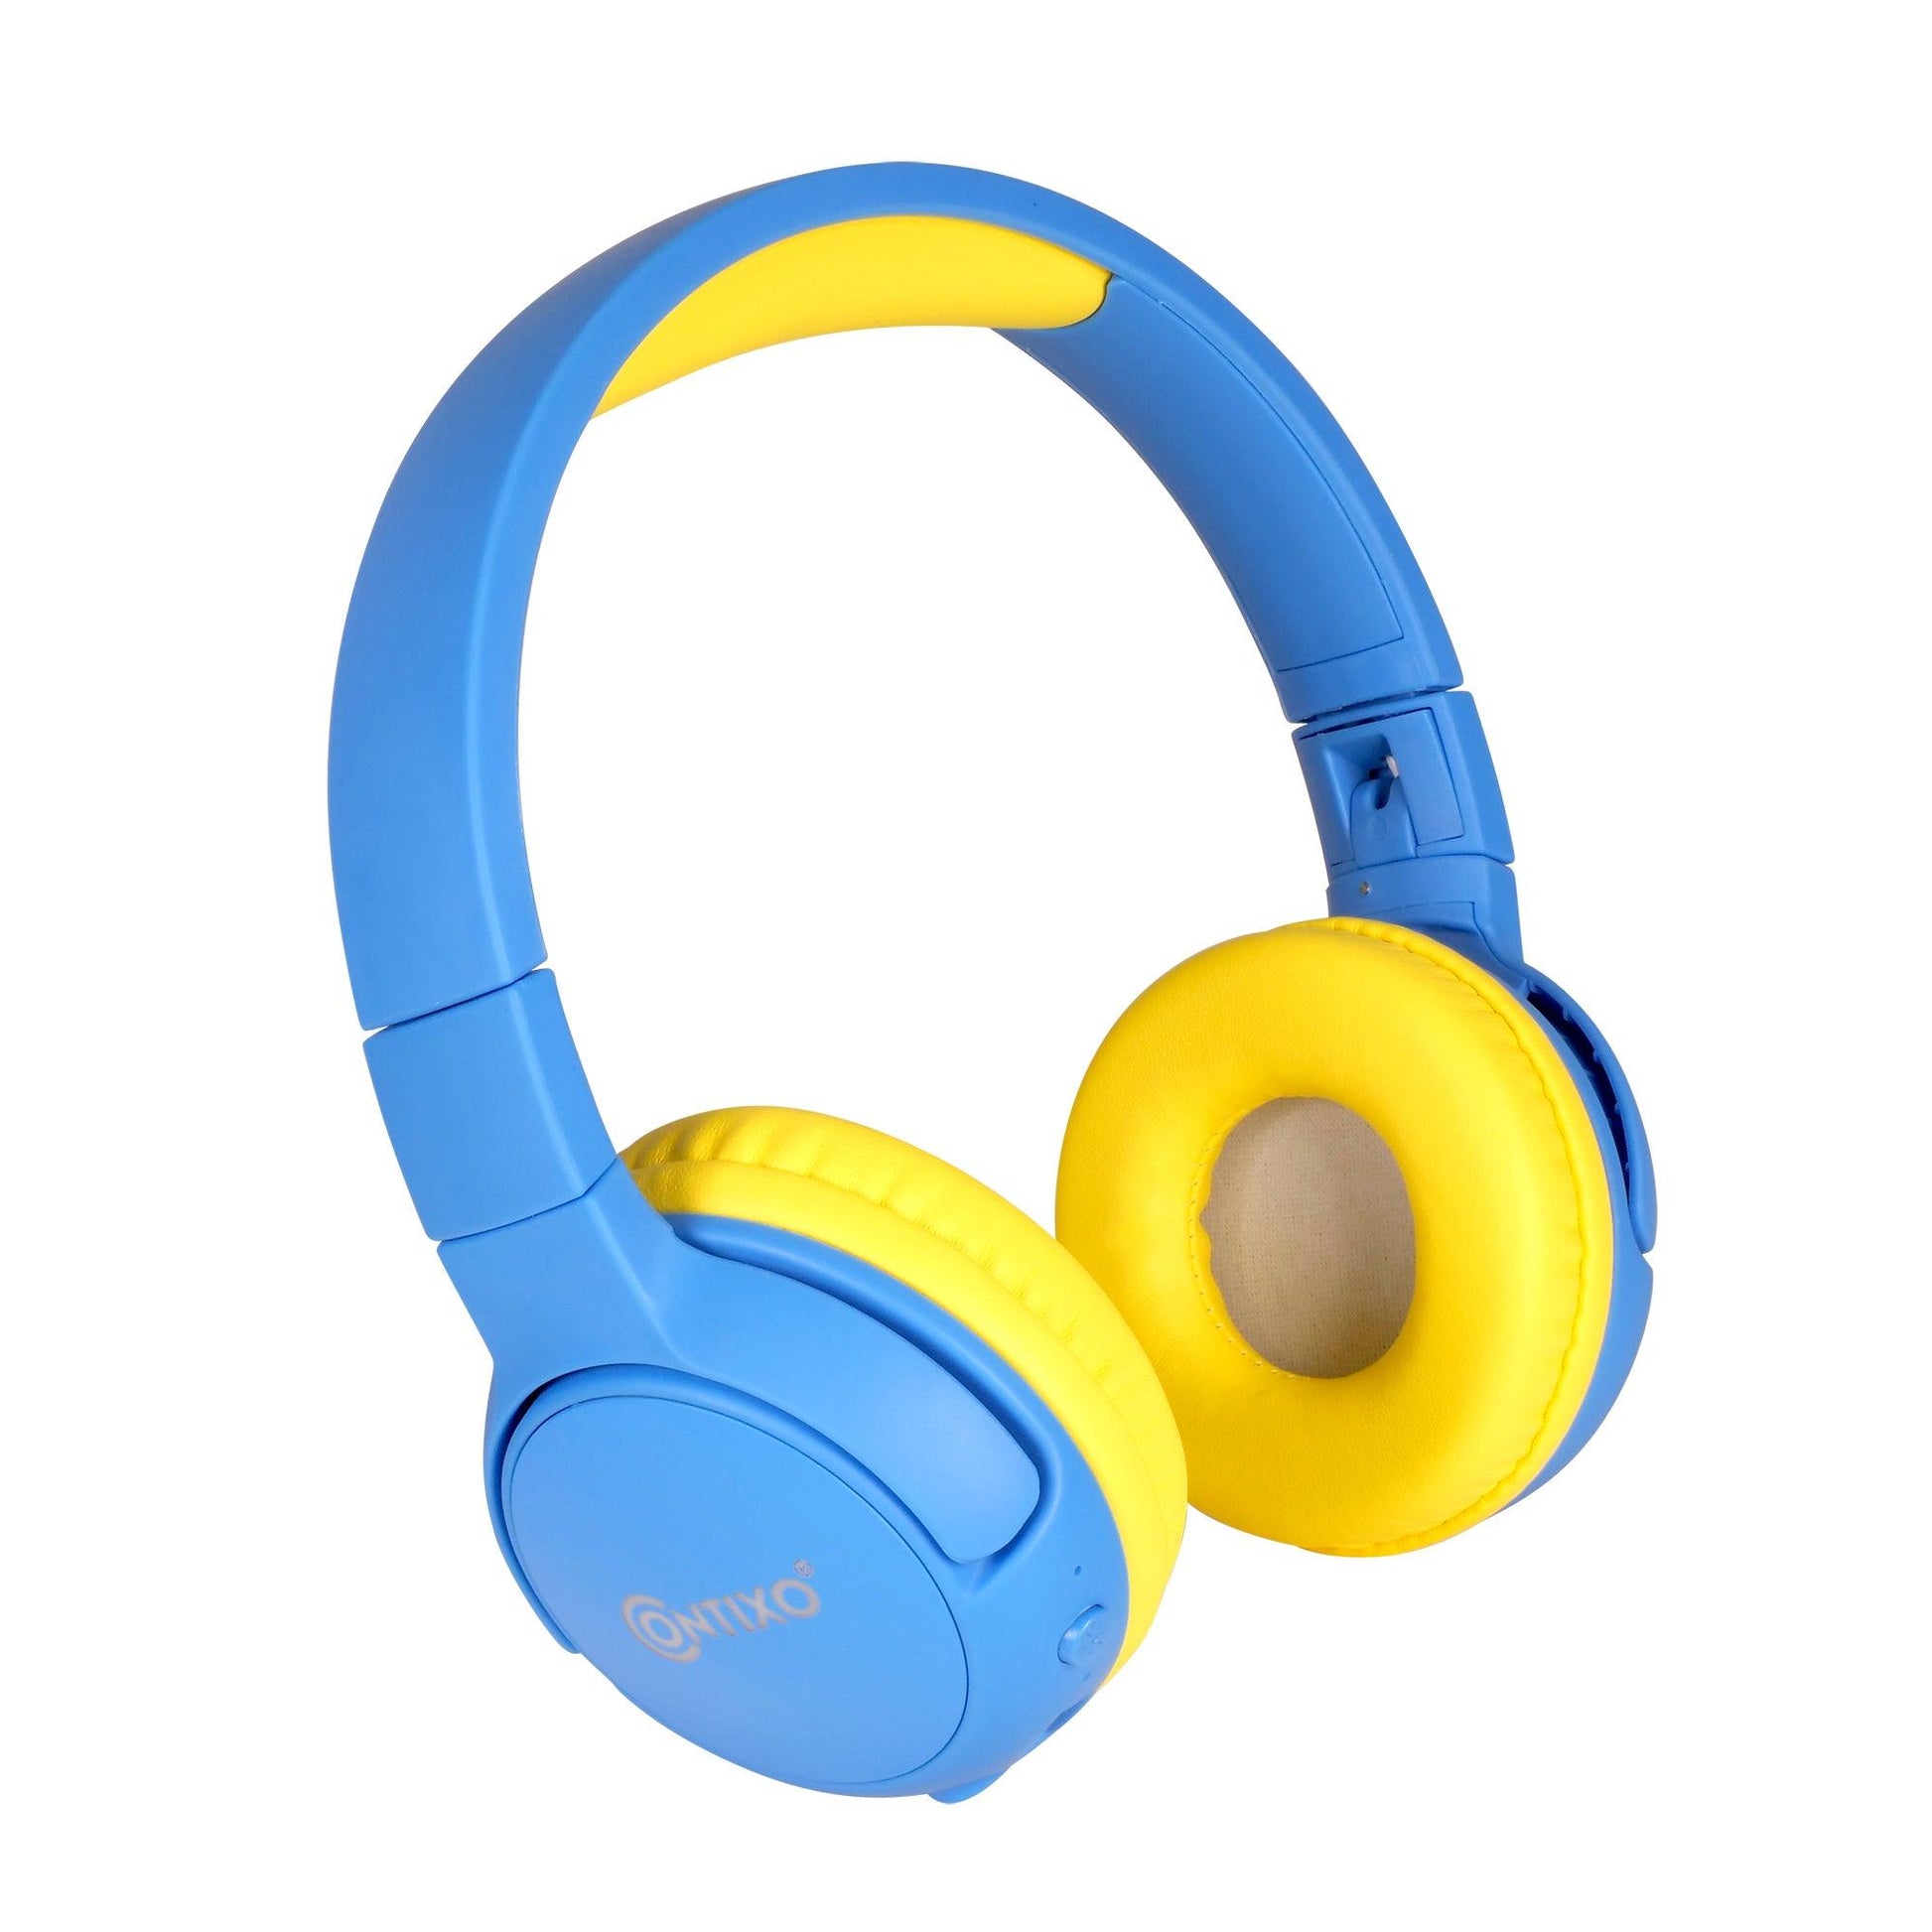 KB5 Kids Wireless Bluetooth Headphones, Blue - Loomini